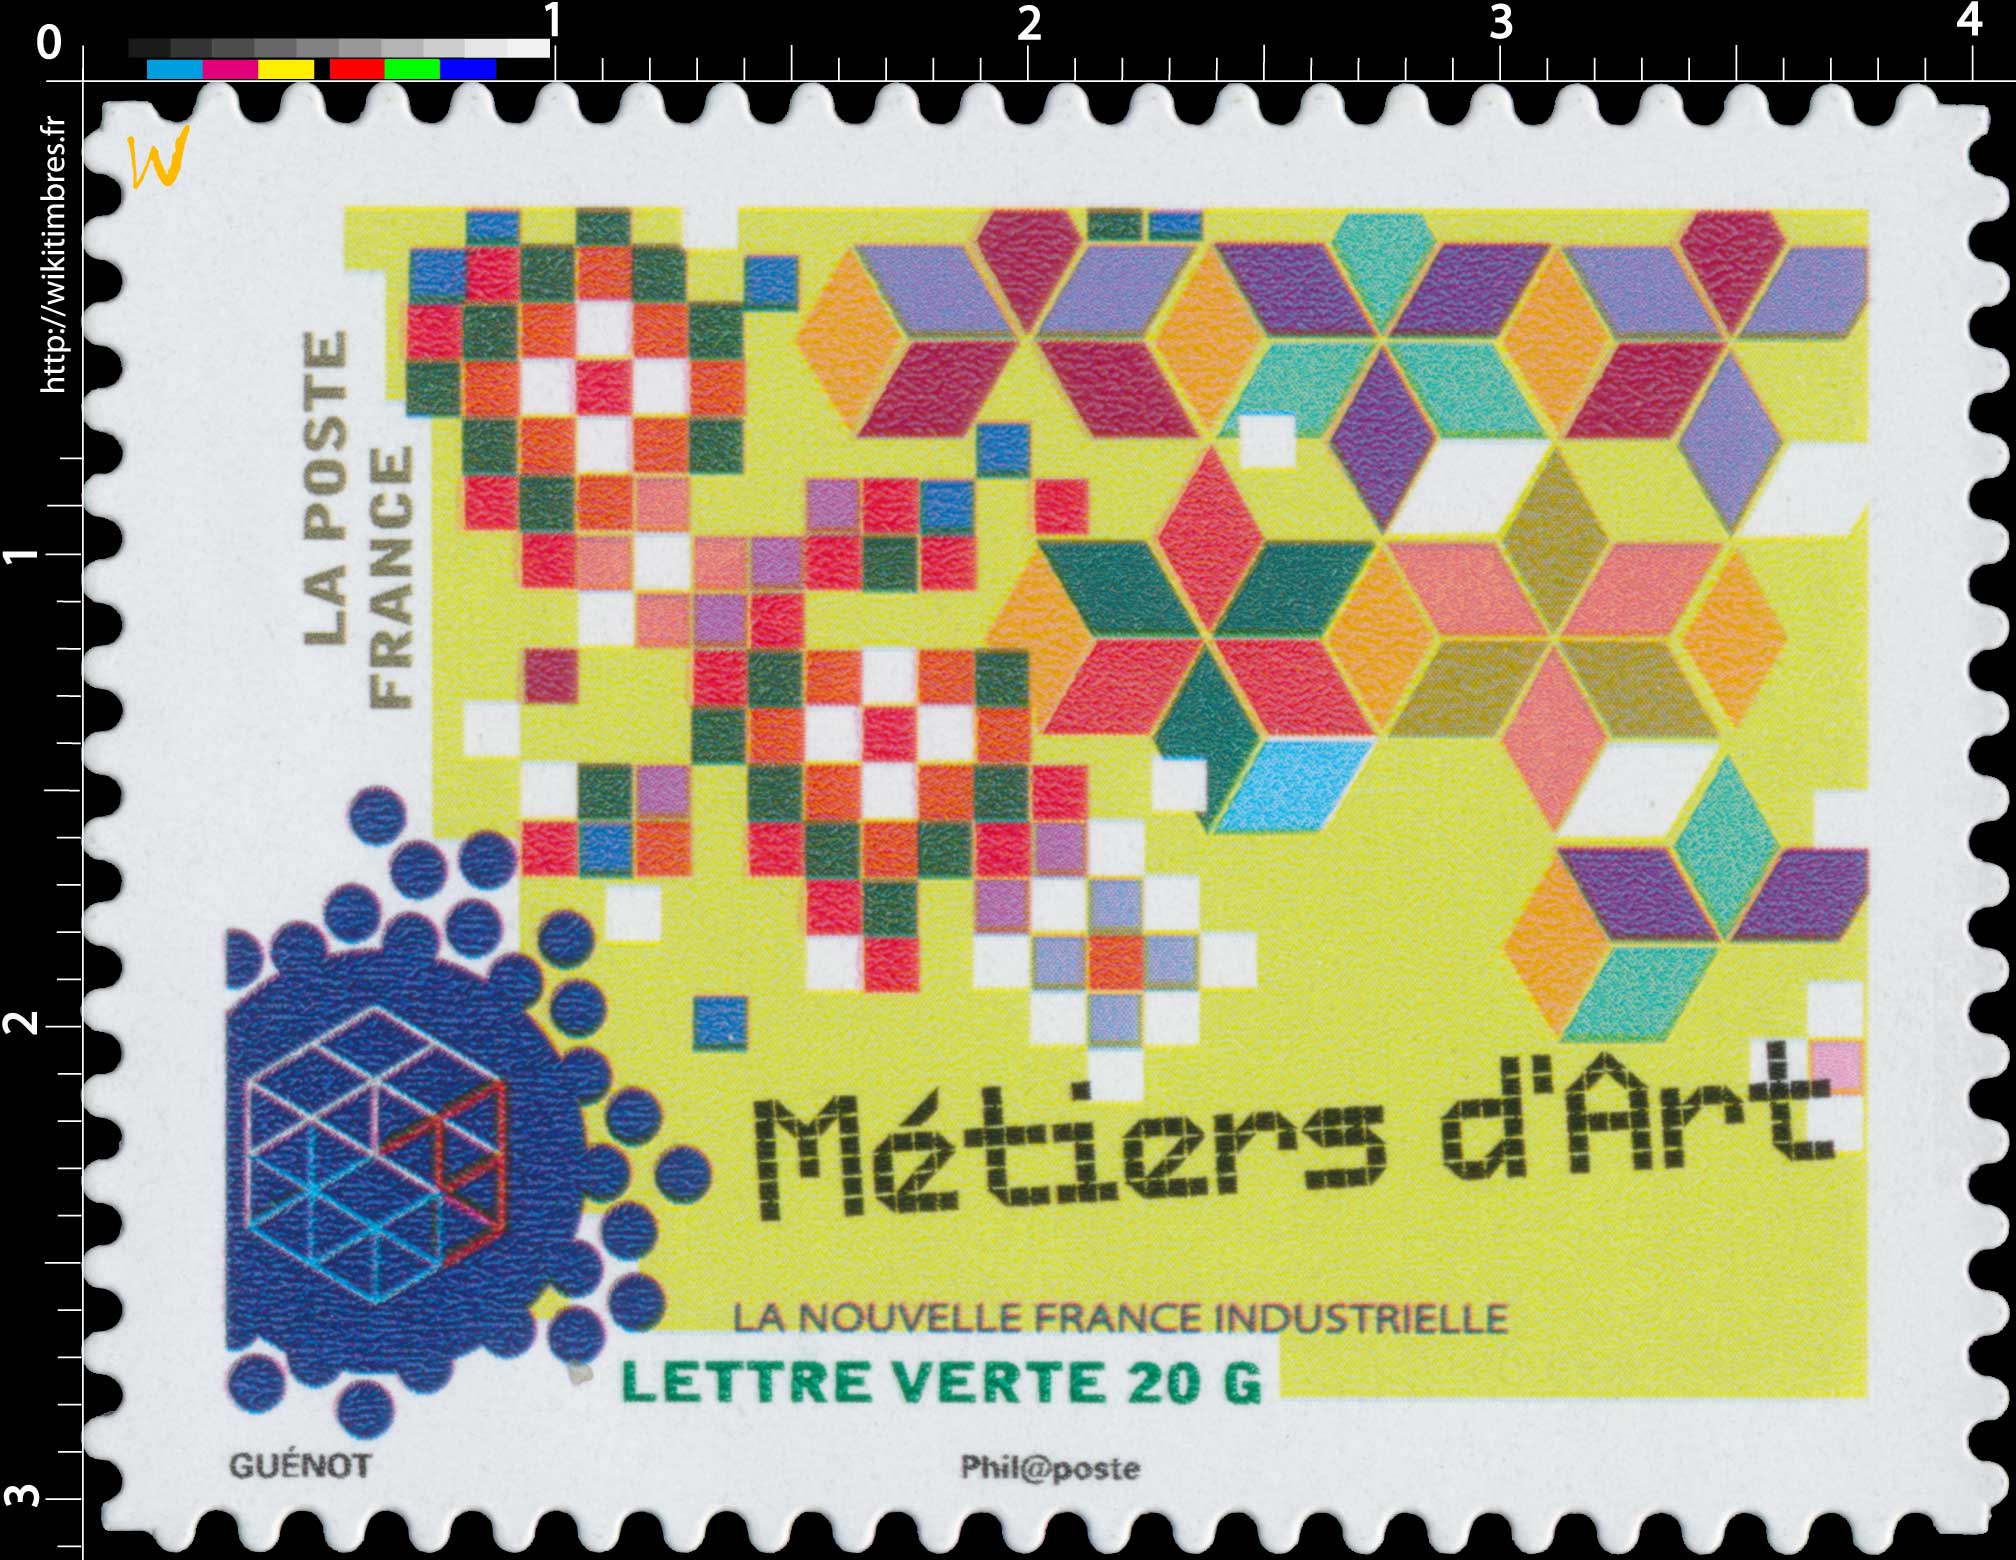 2014 La nouvelle France industrielle - Métiers d'Art